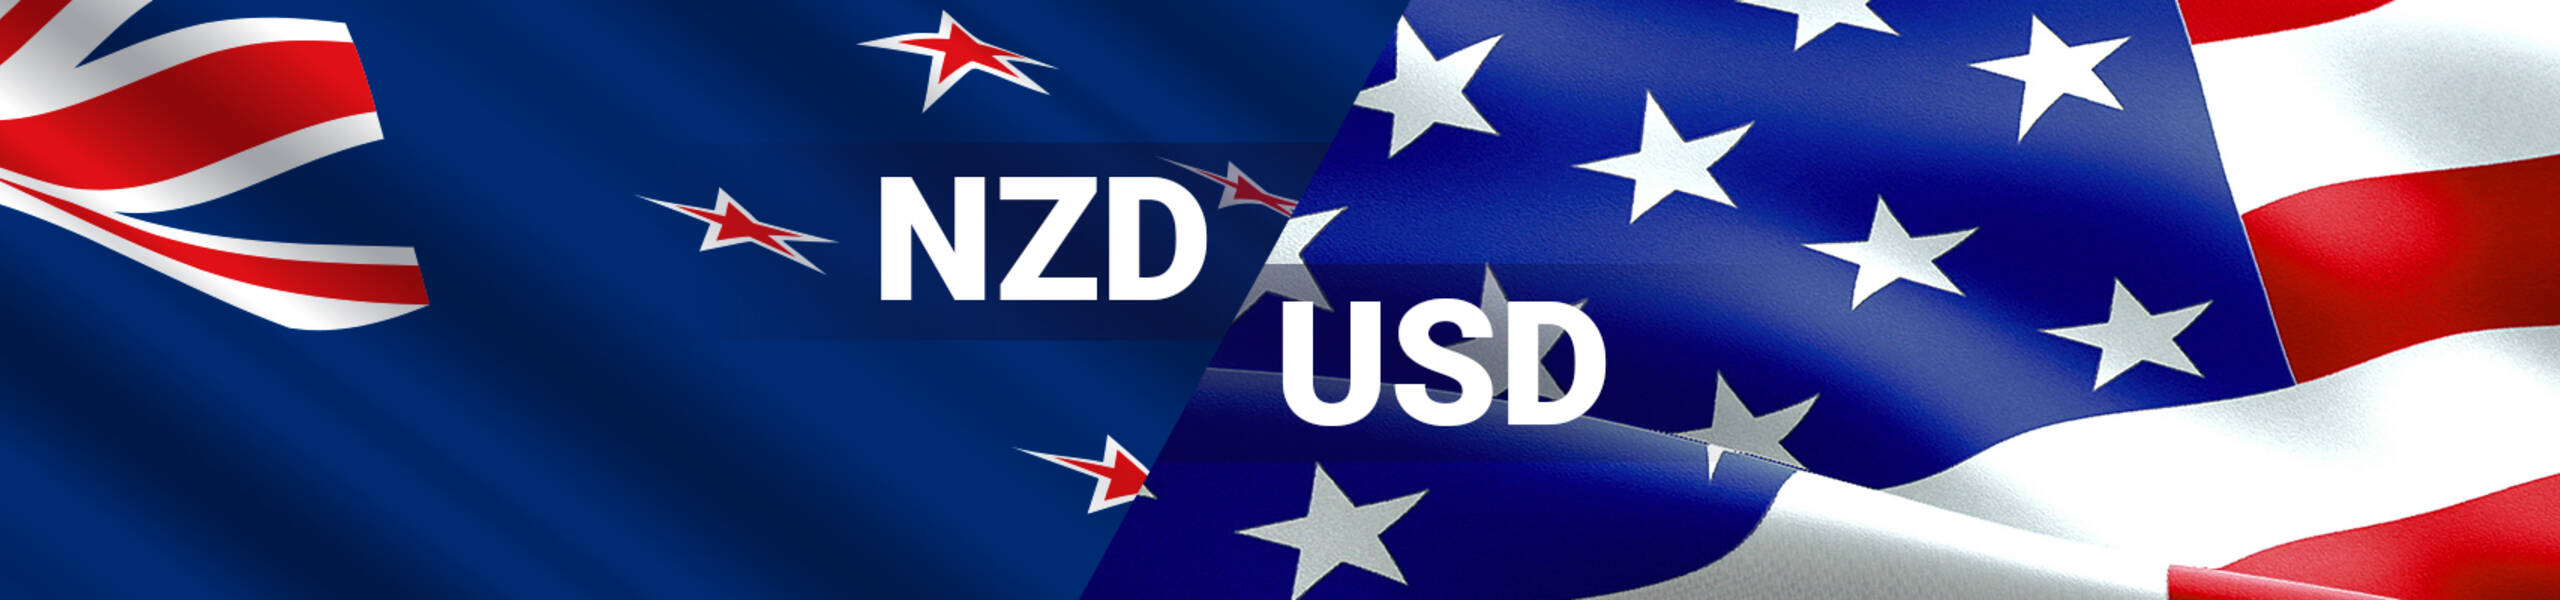 NZD/USD: kiwi is losing its ground